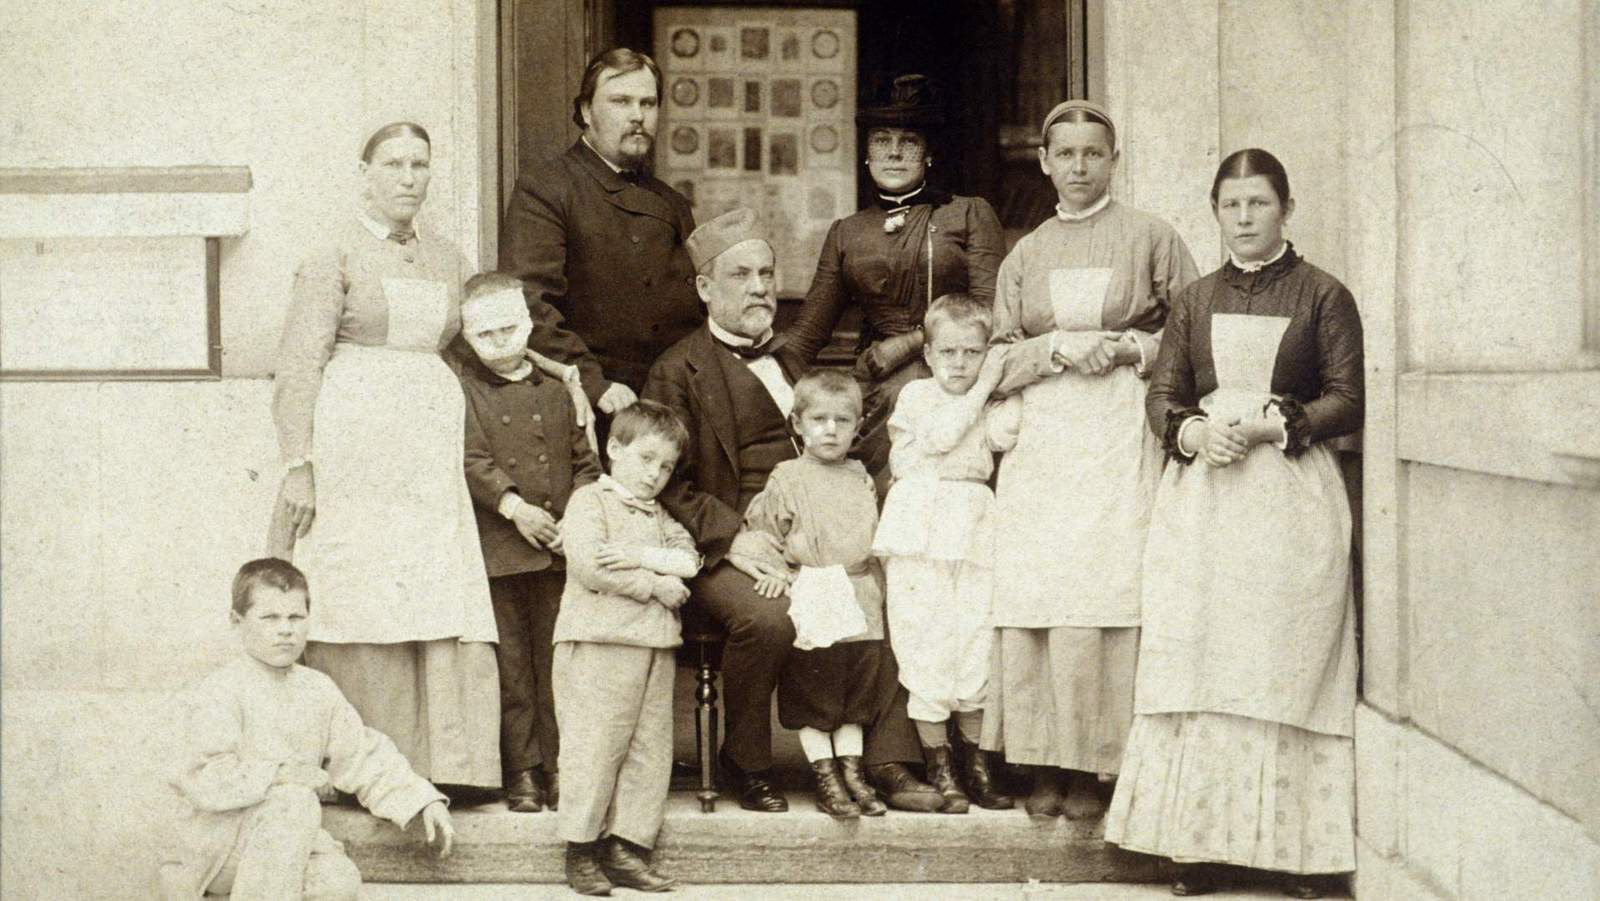 Louis Pasteur entouré d'enfants mordus, vaccinés contre la rage, en 1886 à l'Ecole Normale Supérieure.